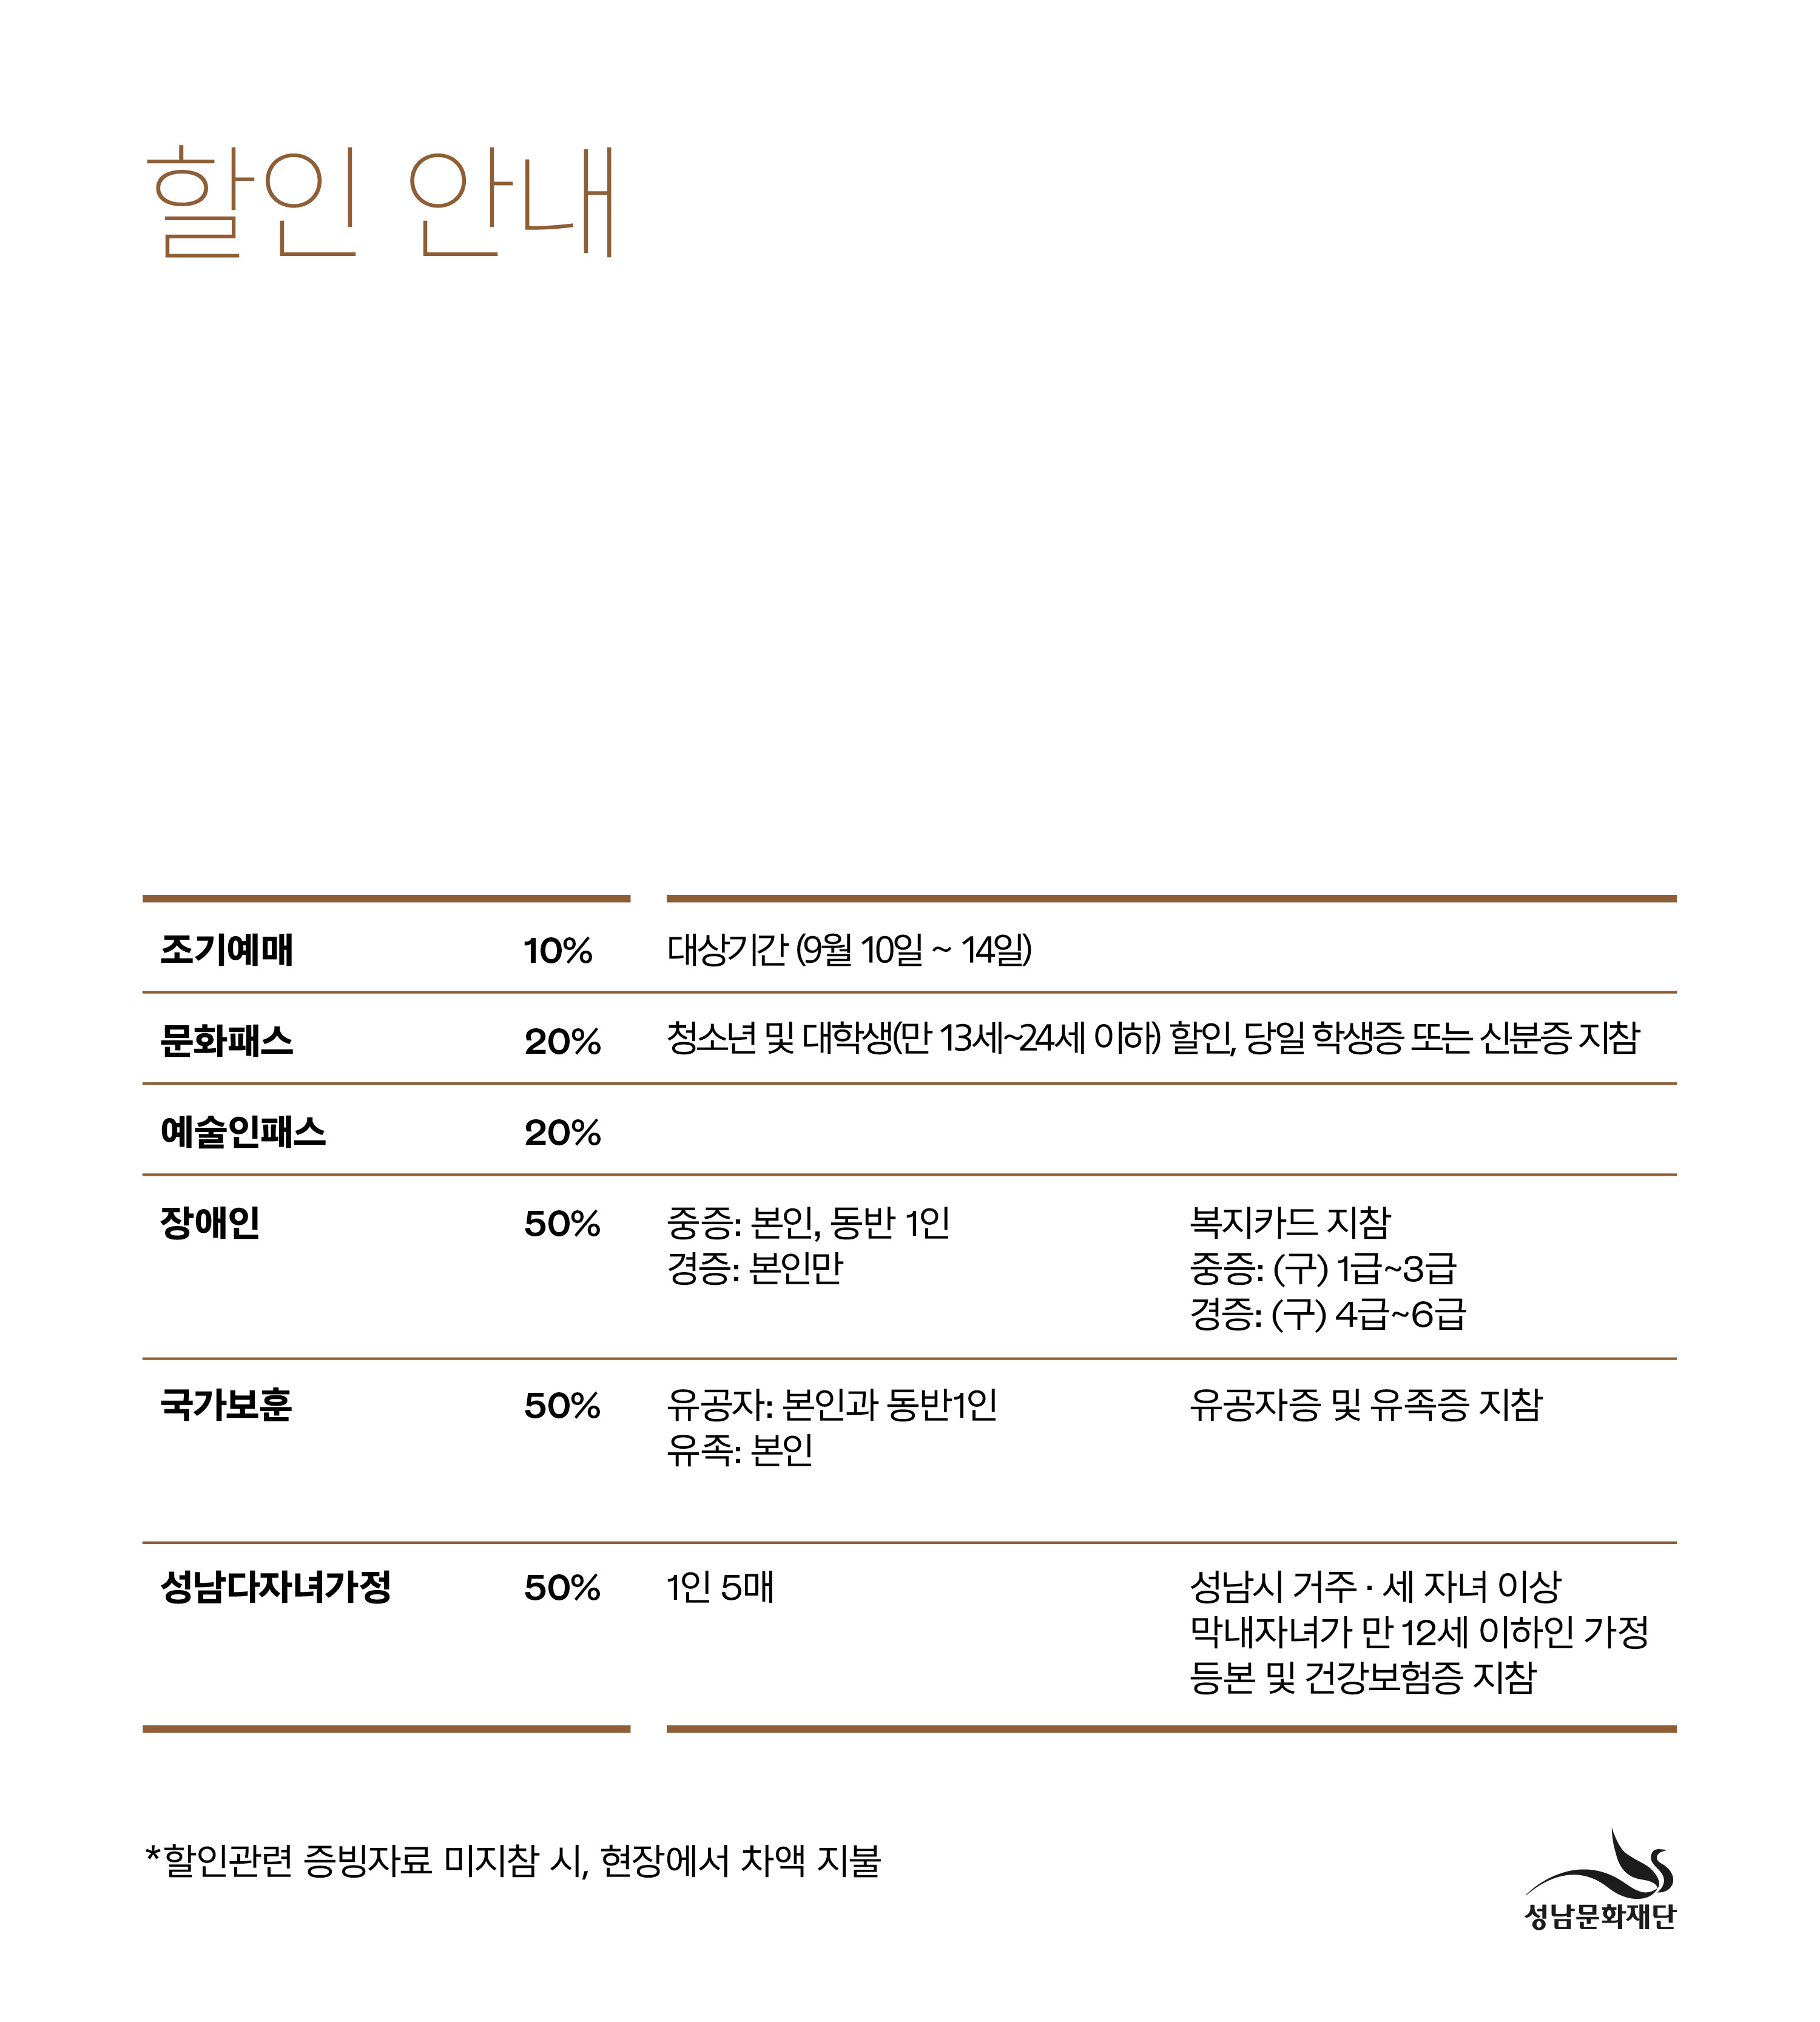 아티스트 인사이트 Ⅴ＜바다＆심연주＞ / Artist Insight Ⅴ <Bada & Shim Yeonju> / 오페라하우스 / 19:30 목 / 미취학아동 입장불가 / R 30,000 S 20,000